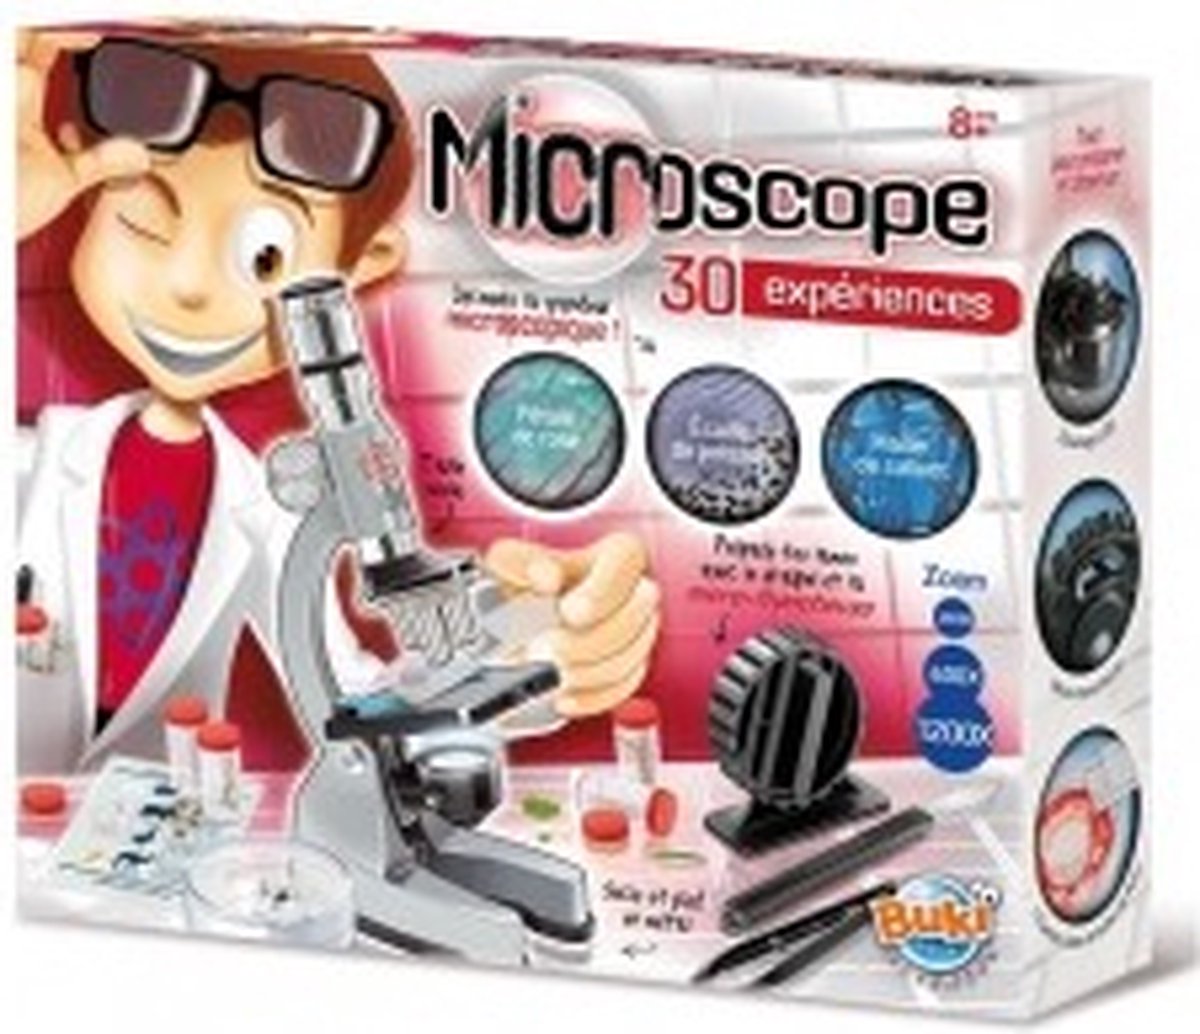 BUKI microscoop voor kinderen van metaal met 30 experimenten. - Buki